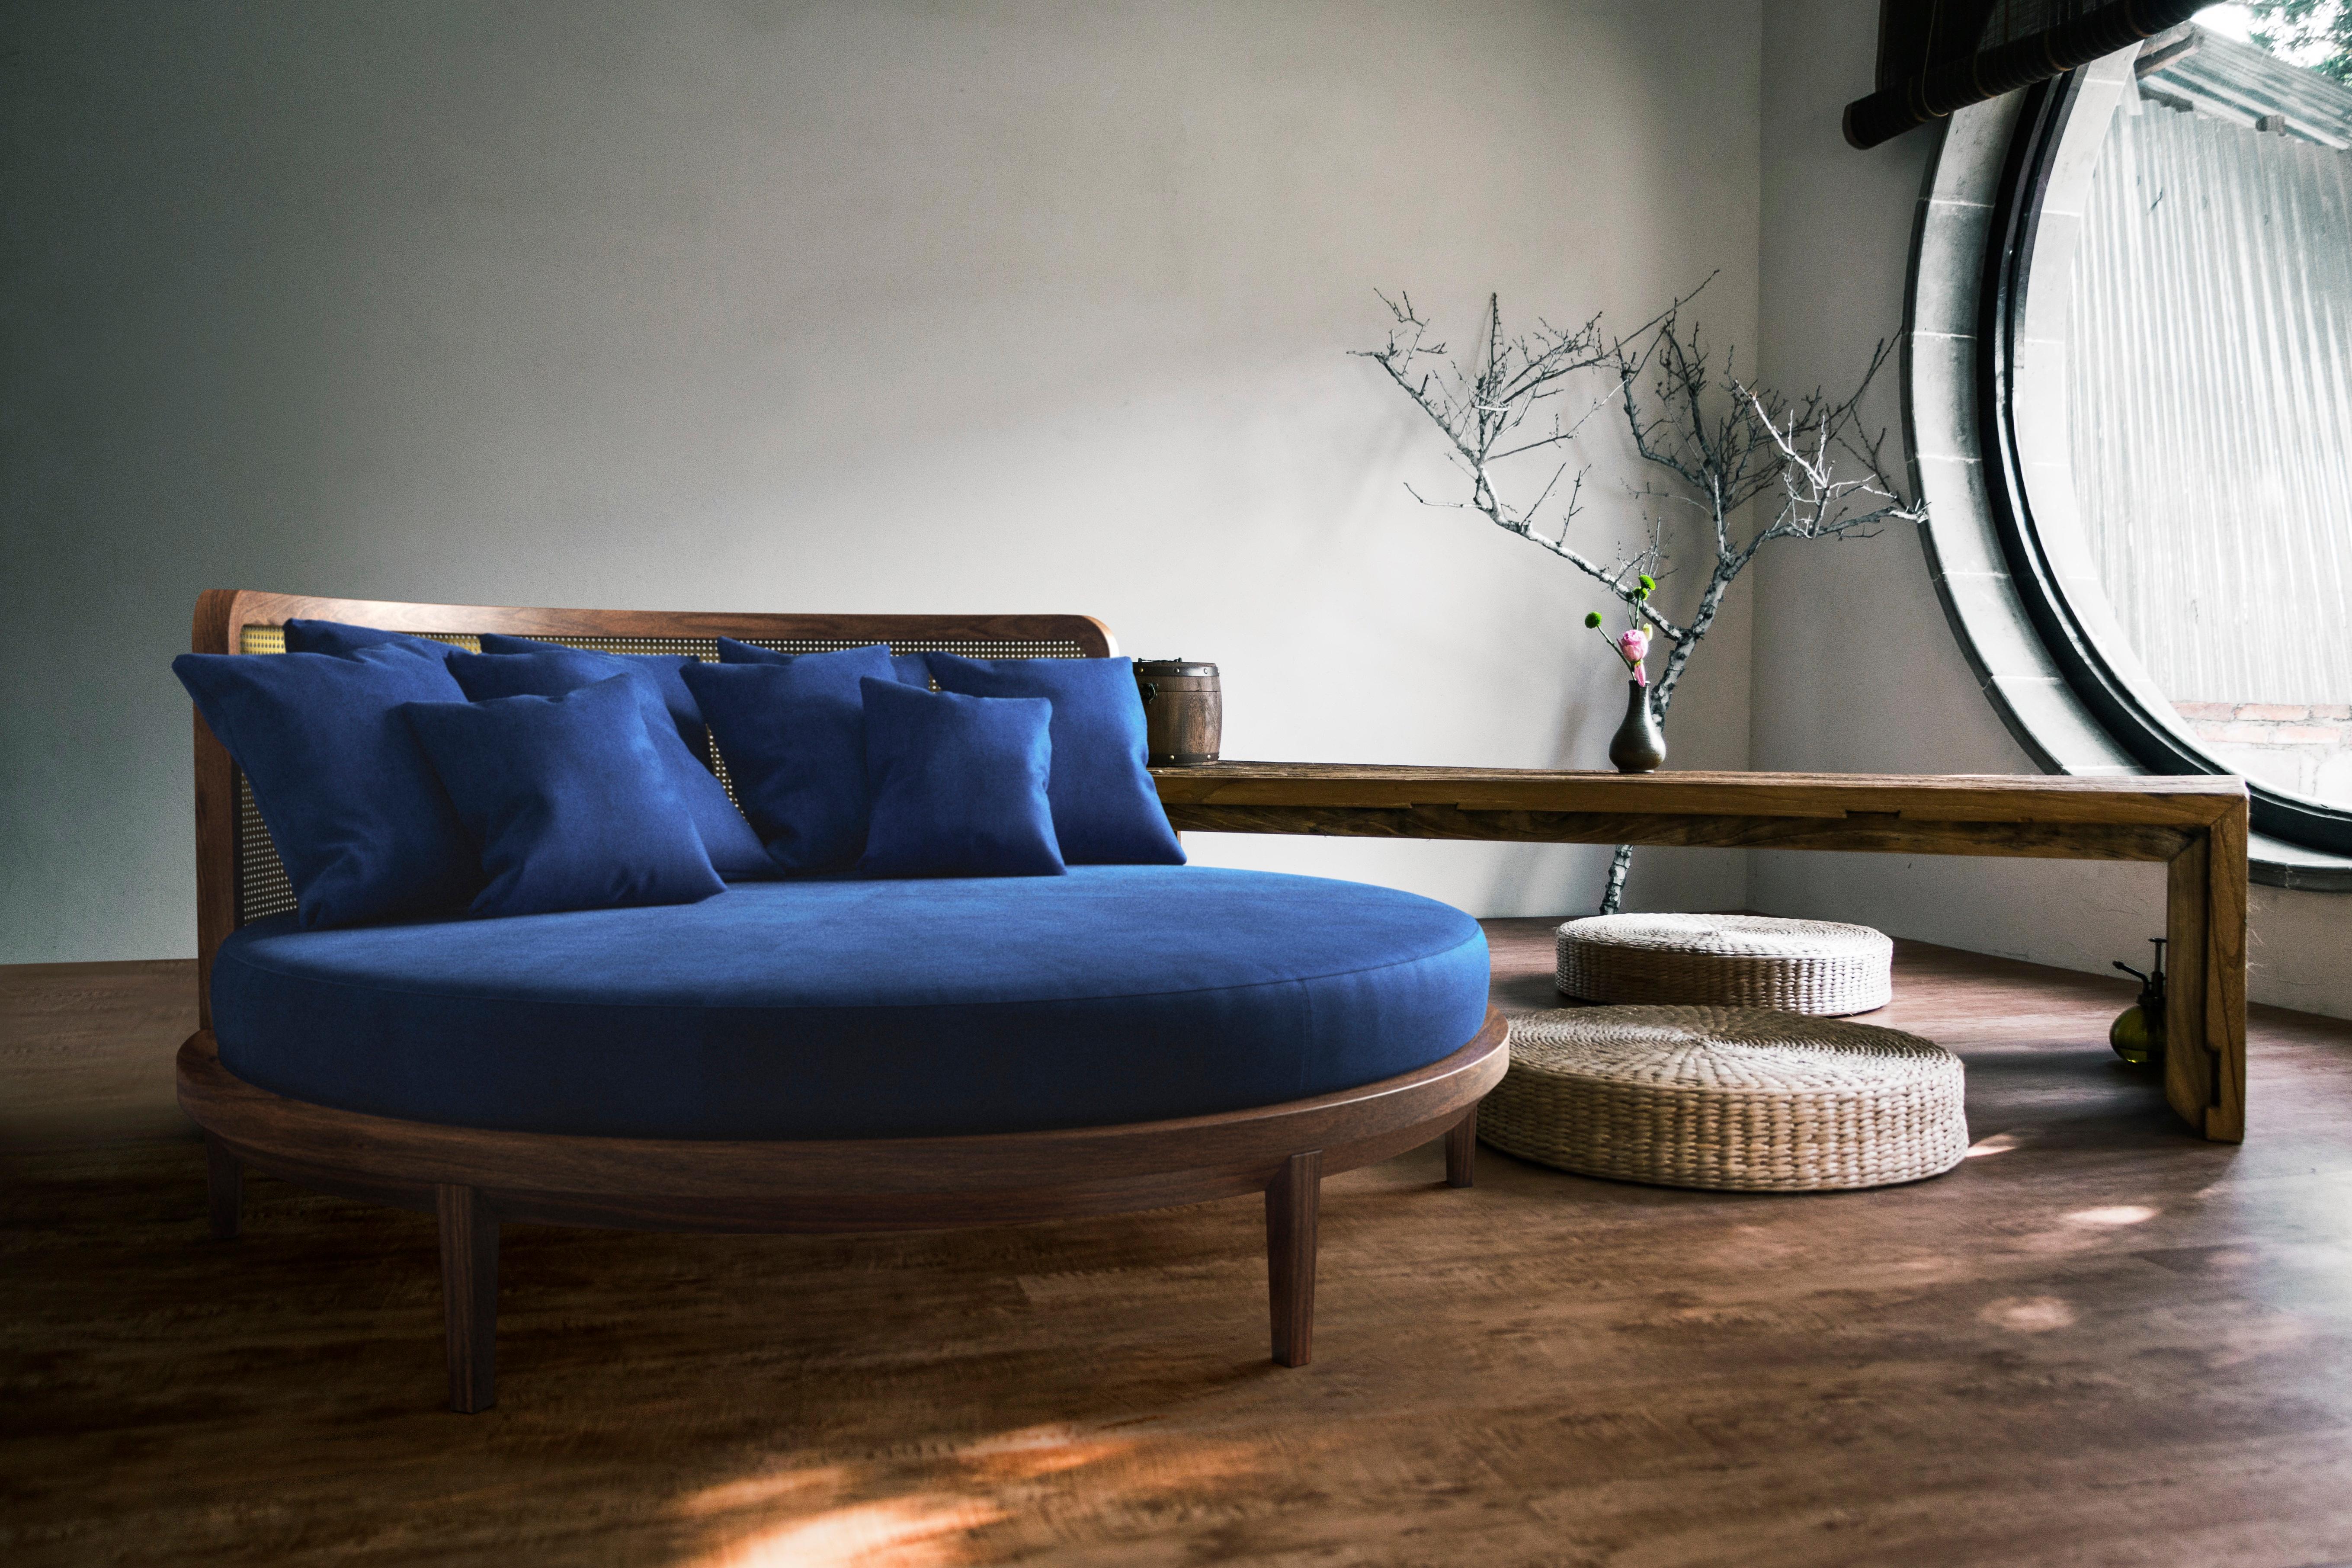 Giotto ist das perfekte Designerbett, das den Mittelpunkt des Raumes bildet. 360 Grad der Schönheit. Hinter dem leichten Rahmen aus abgeschrägtem Canaletto-Nussbaum verbirgt sich ein superbequemes Boxspringbett, das mit Wolle und Taschenfedern